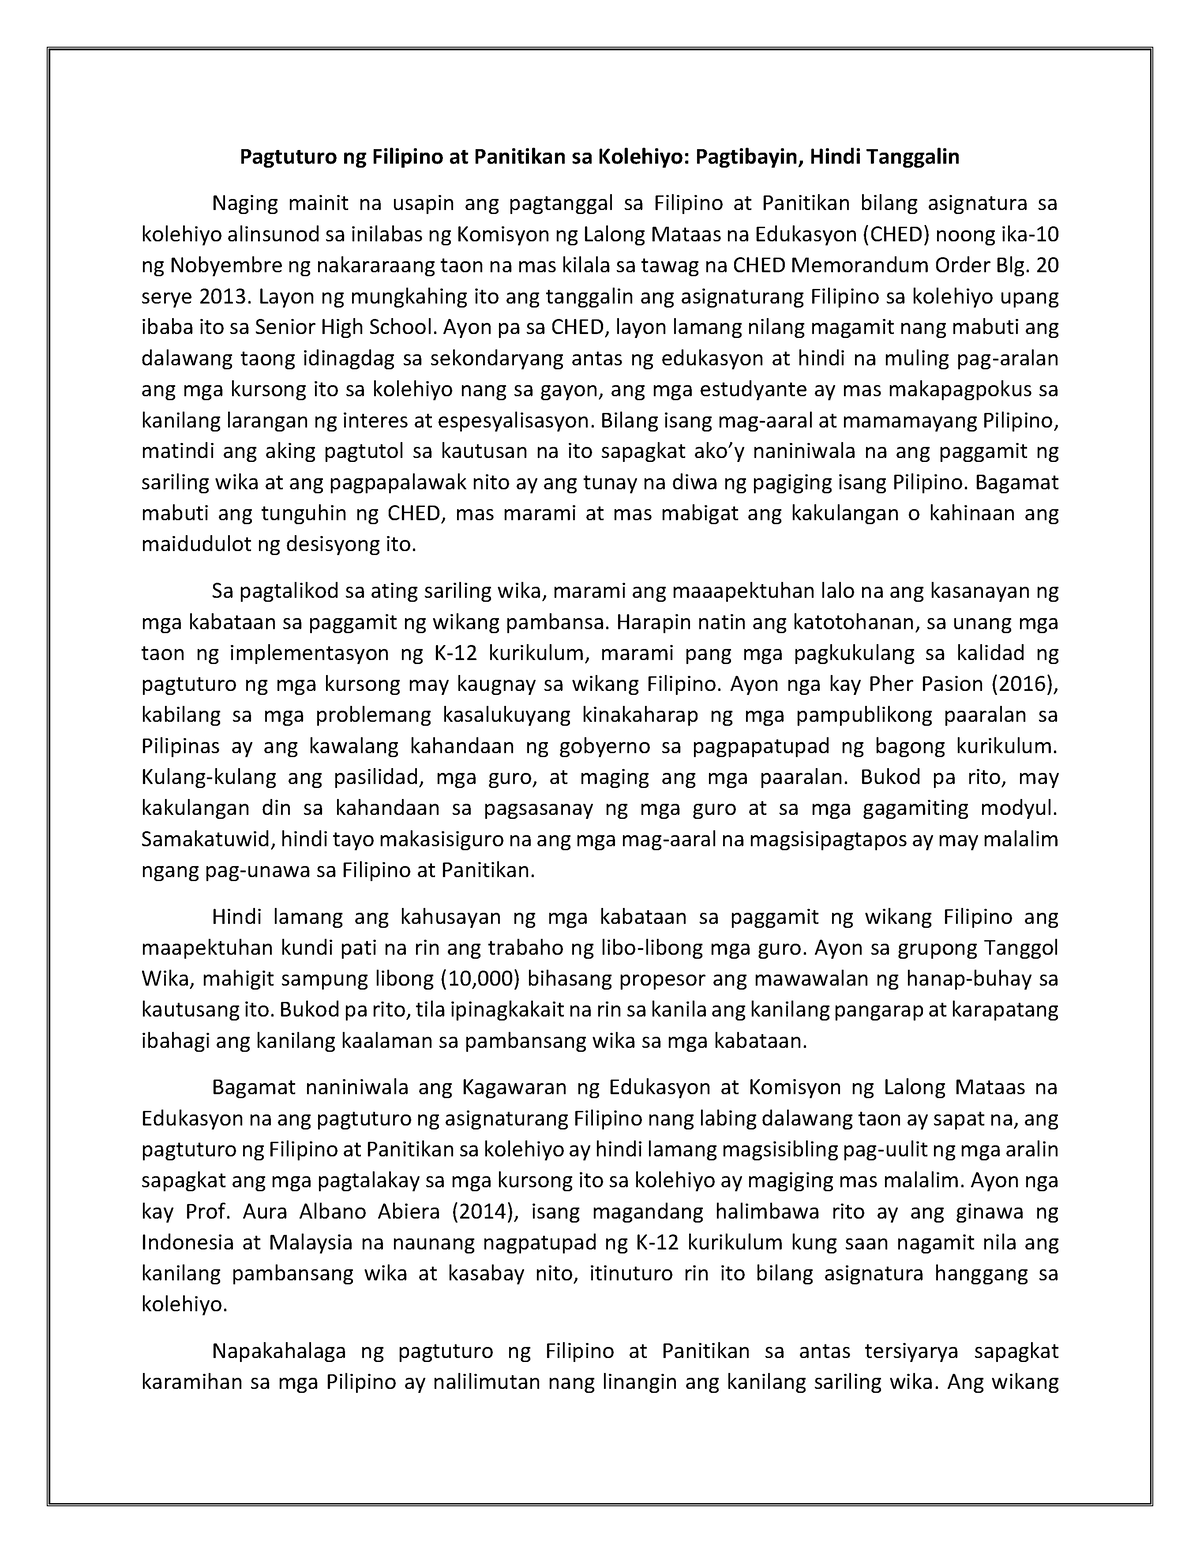 Posisyong papel: Pagtanggal ng Filipino at Panitikan sa Kolehiyo